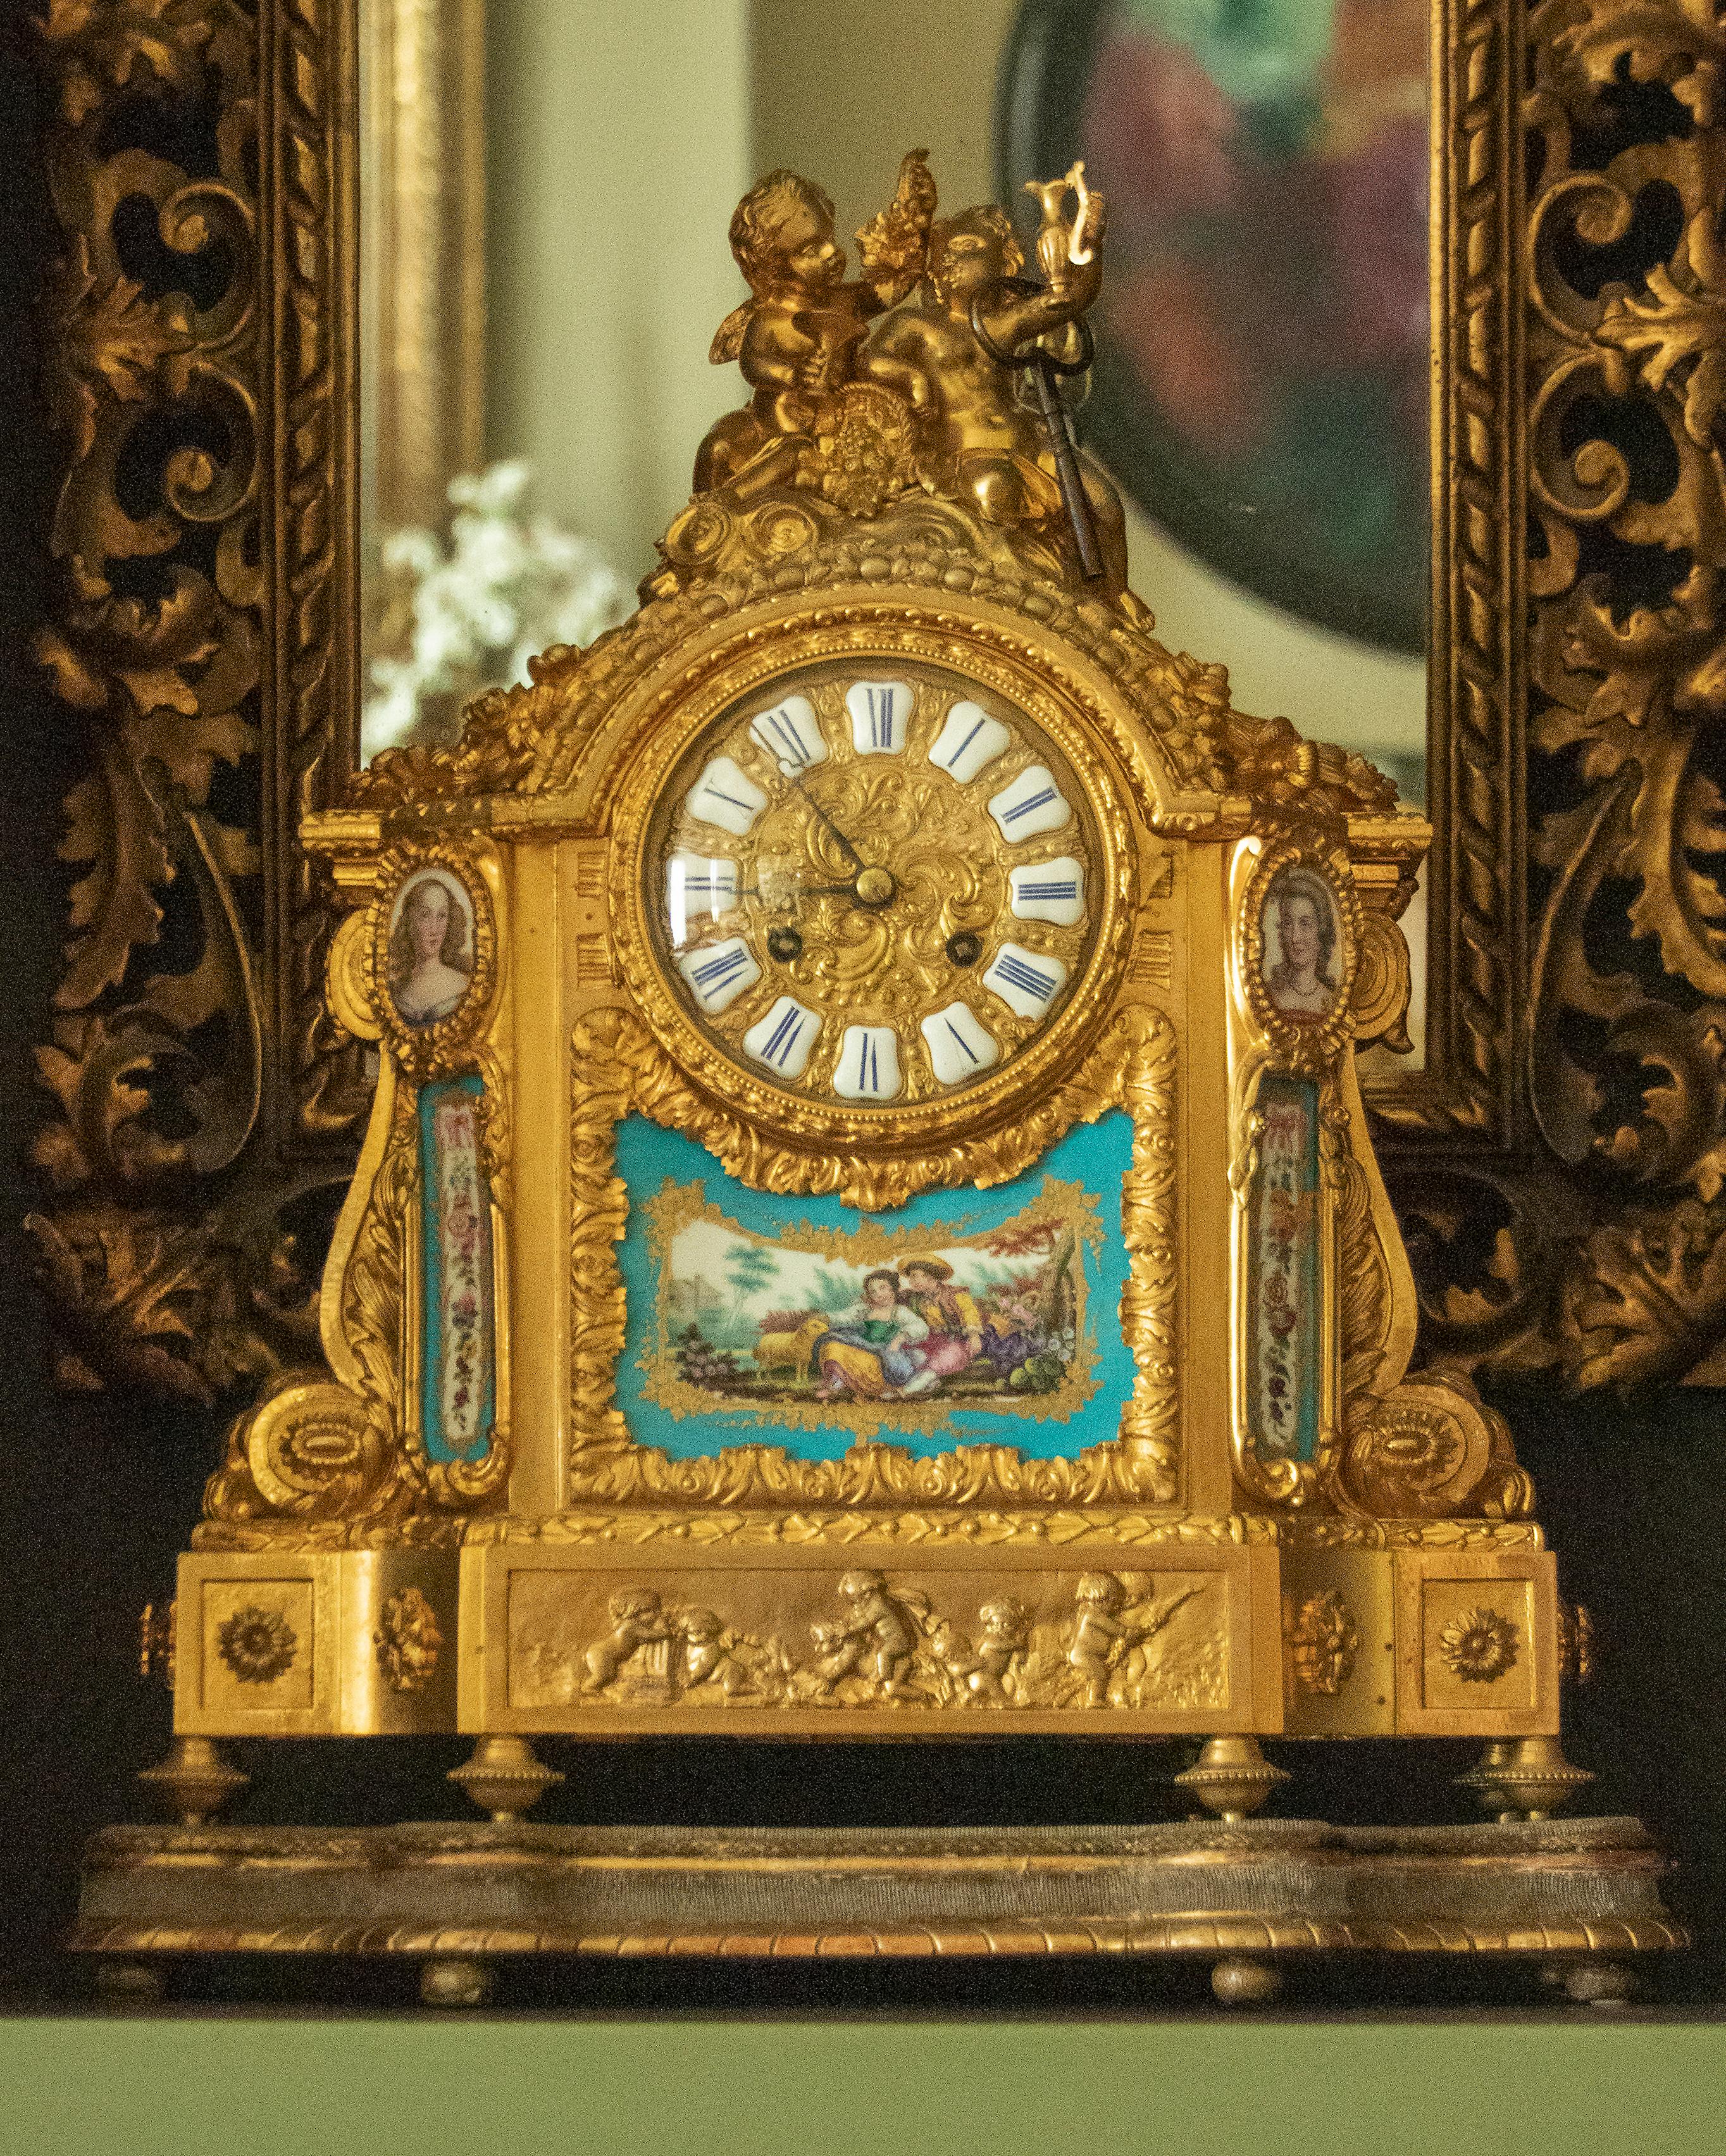 Pendule de cheminée de style Louis XVI en bronze et bronze ciselé de haute qualité. Le boîtier est composé d'ornements moulés en laiton doré et bronze ormolu, de chiffres romains dans des cartouches émaillés blancs. Au-dessus de deux putti buveurs